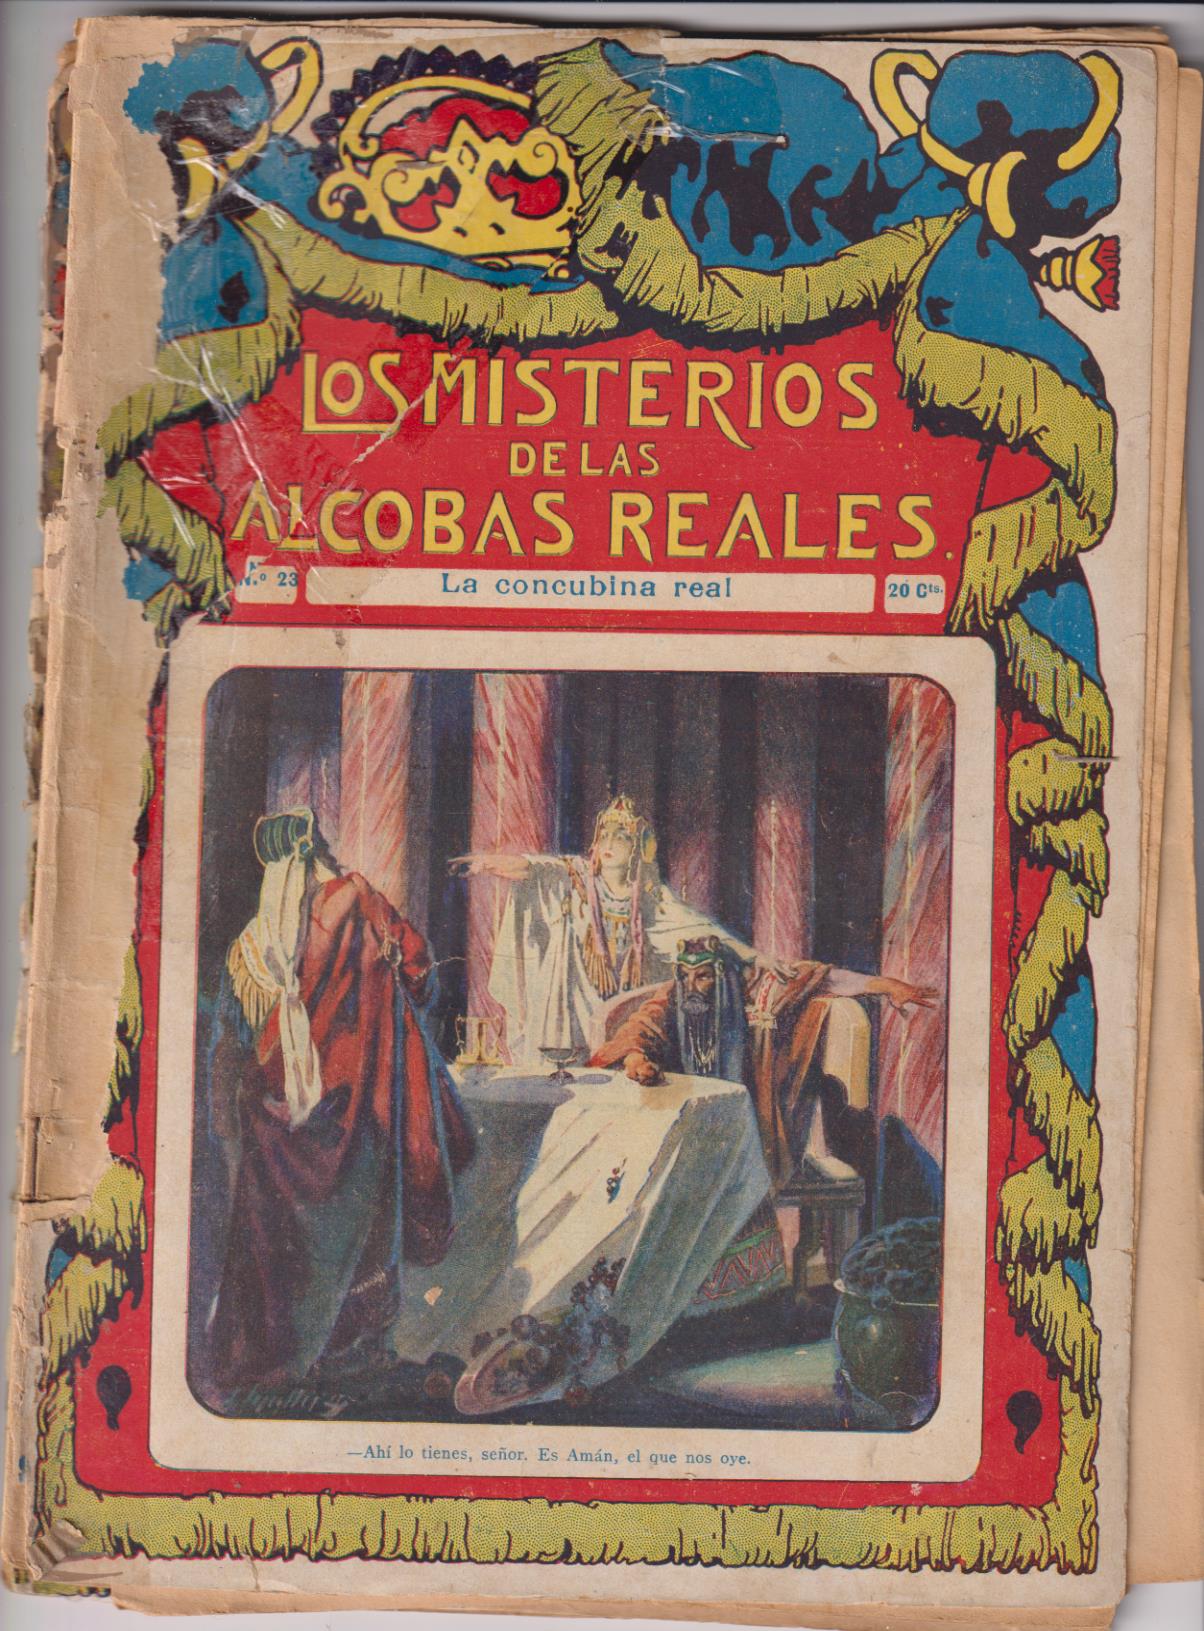 Los Misterios de las Alcobas Reales. F. Granada y Ca. Lote de 2 ejemplares: 23 y 24. Años 20